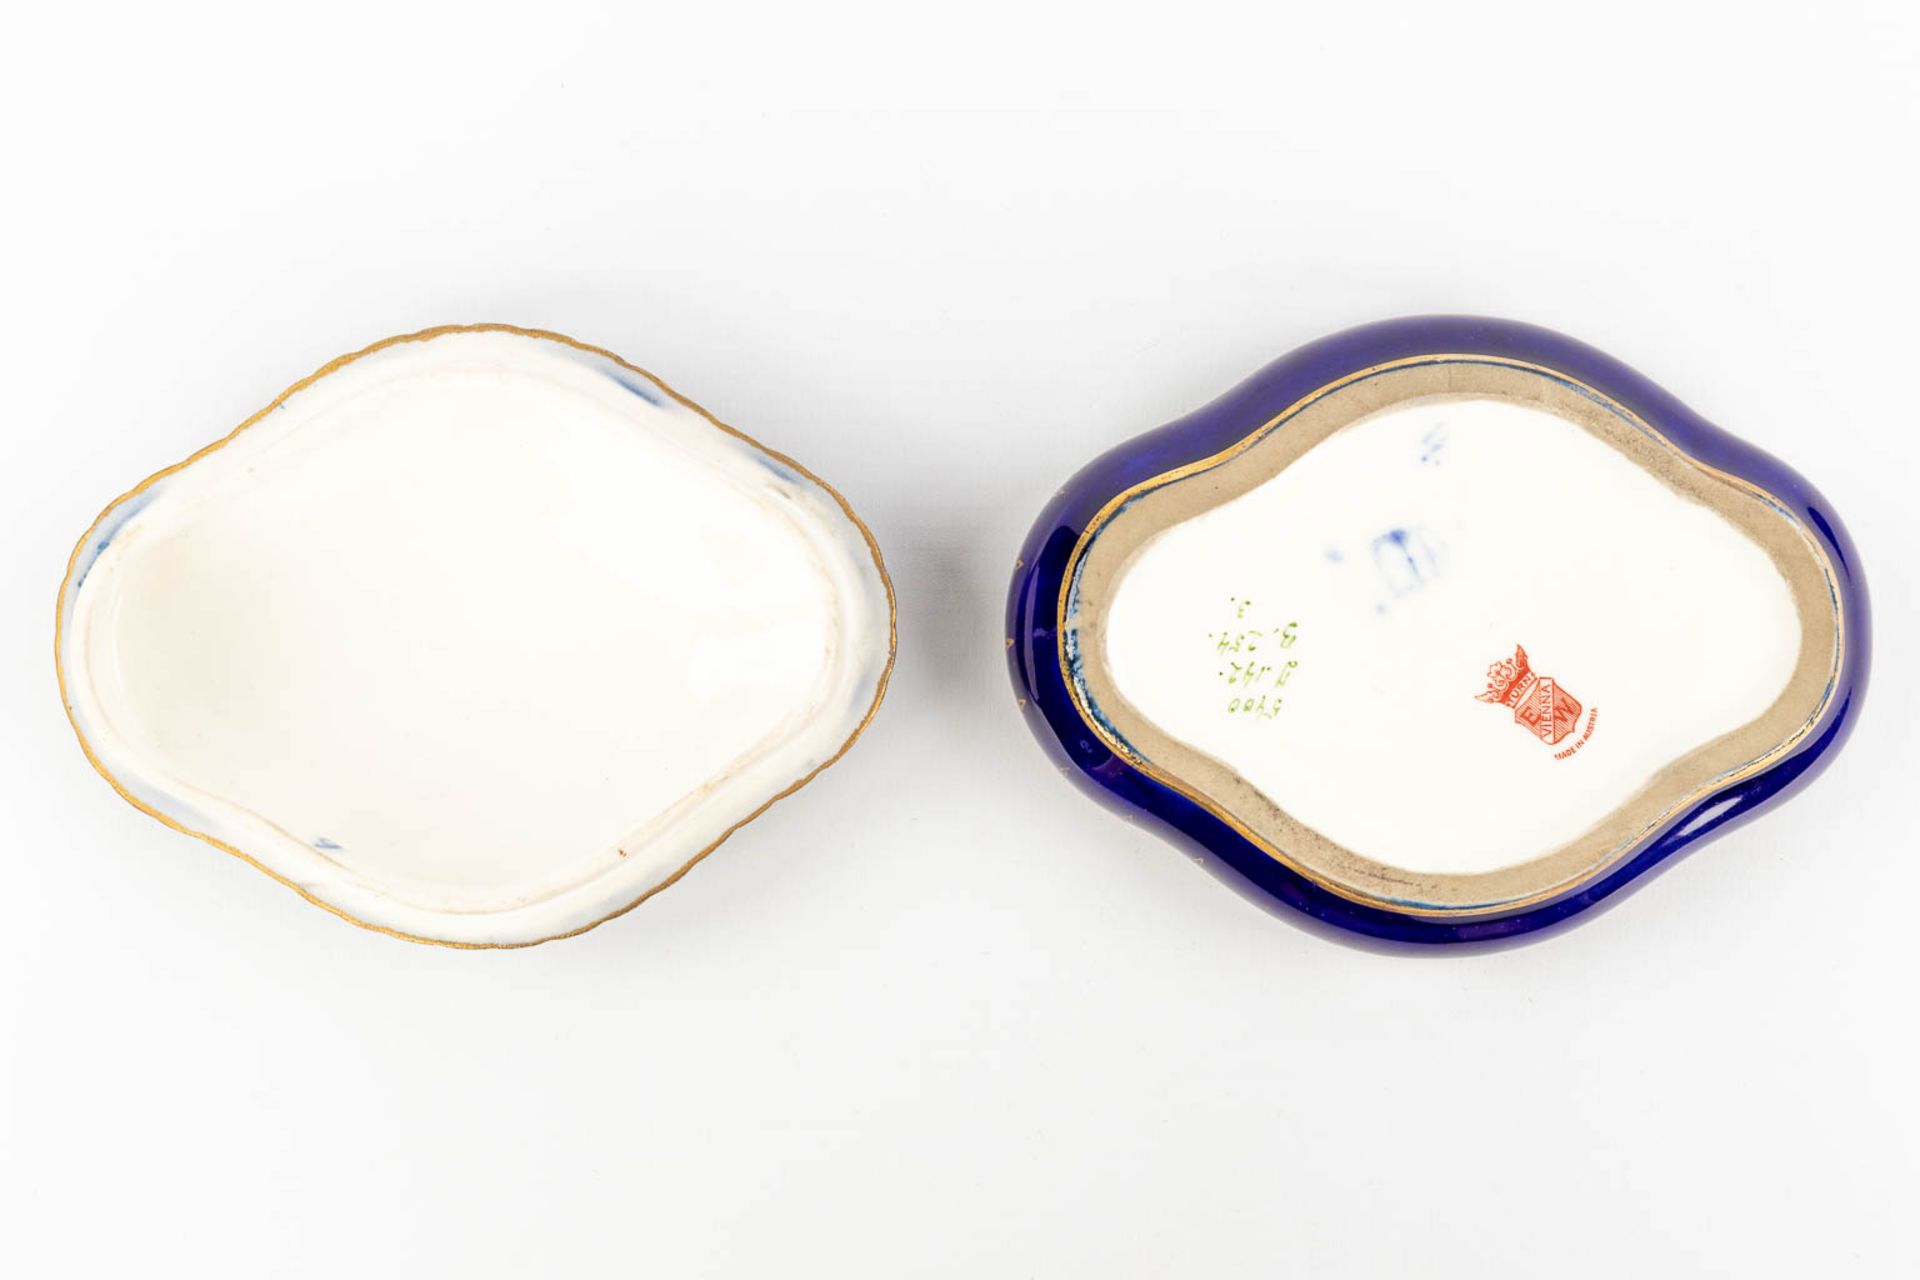 Sitzendorf & 'Royal Vienna' a set of 2 porcelain items. (L:12 x W:20 x H:23 cm) - Image 6 of 22